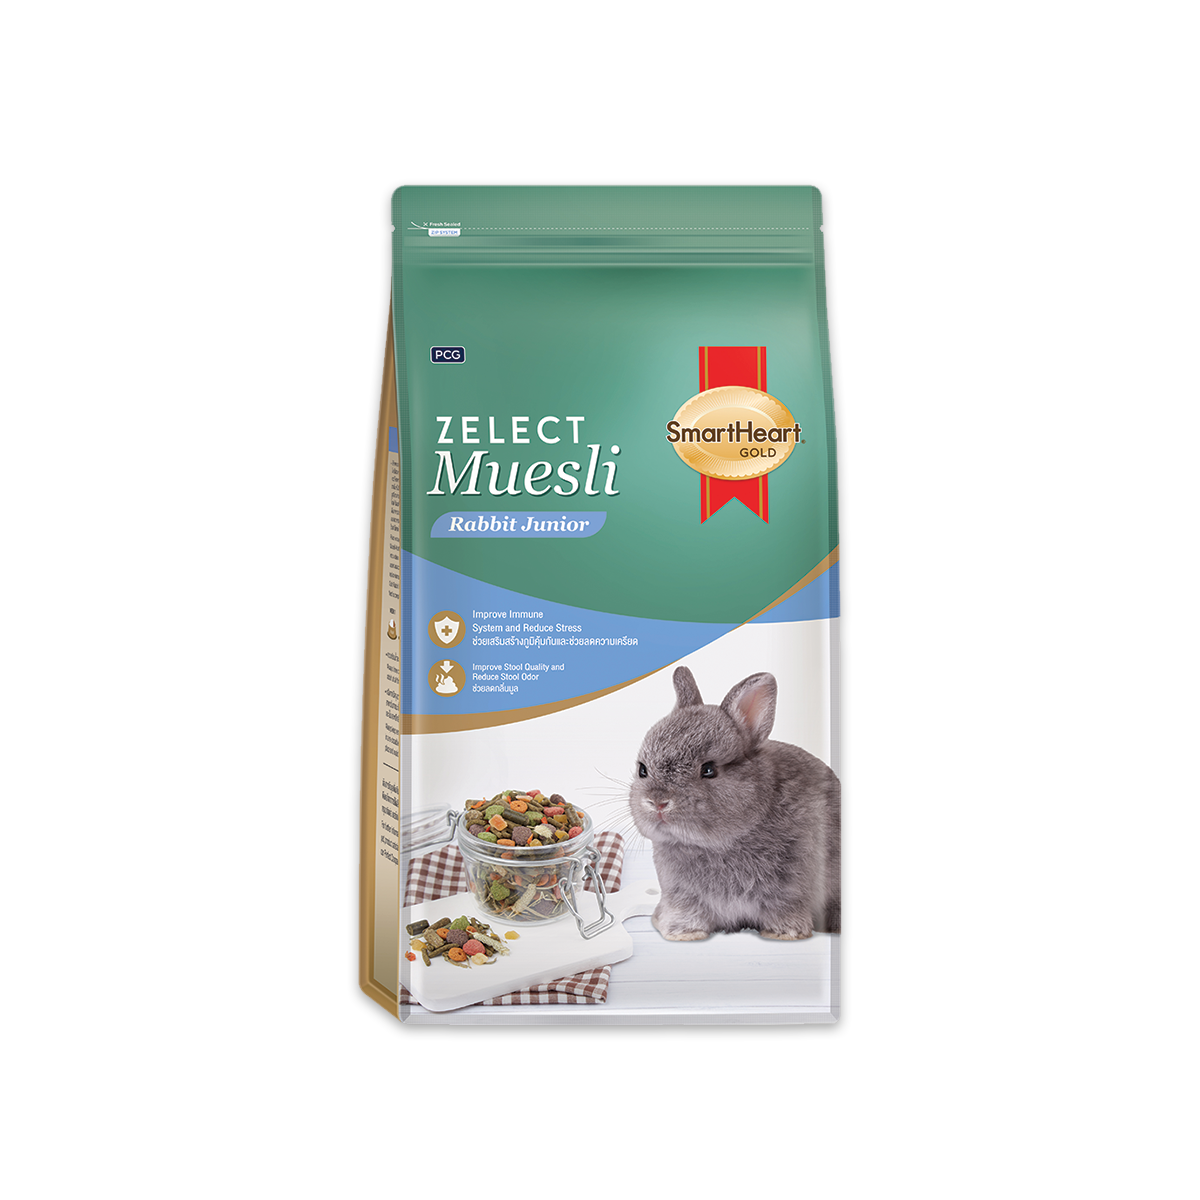 SmartHeart Gold Zelect Muesli Junior สมาร์ทฮาร์ท โกลด์ ซีเลกต์ มูสลี่ อาหารสำหรับลูกกระต่ายและกระต่ายรุ่น